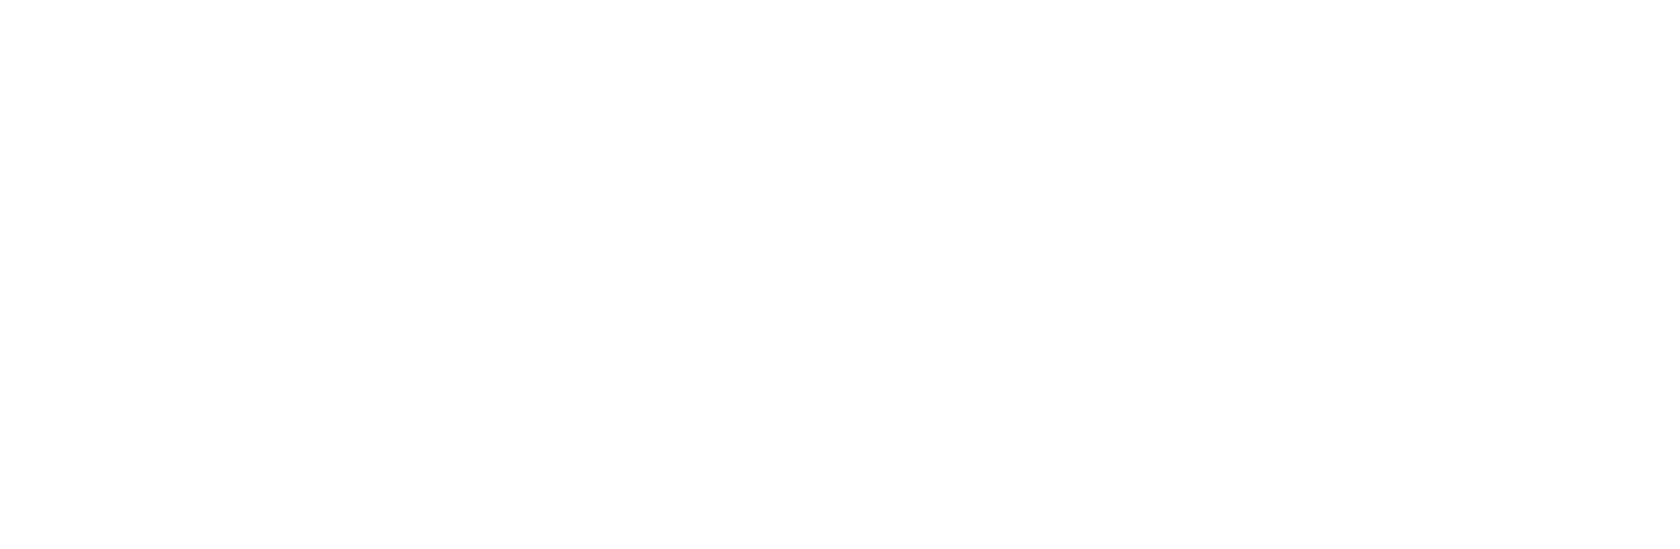 логотип kult